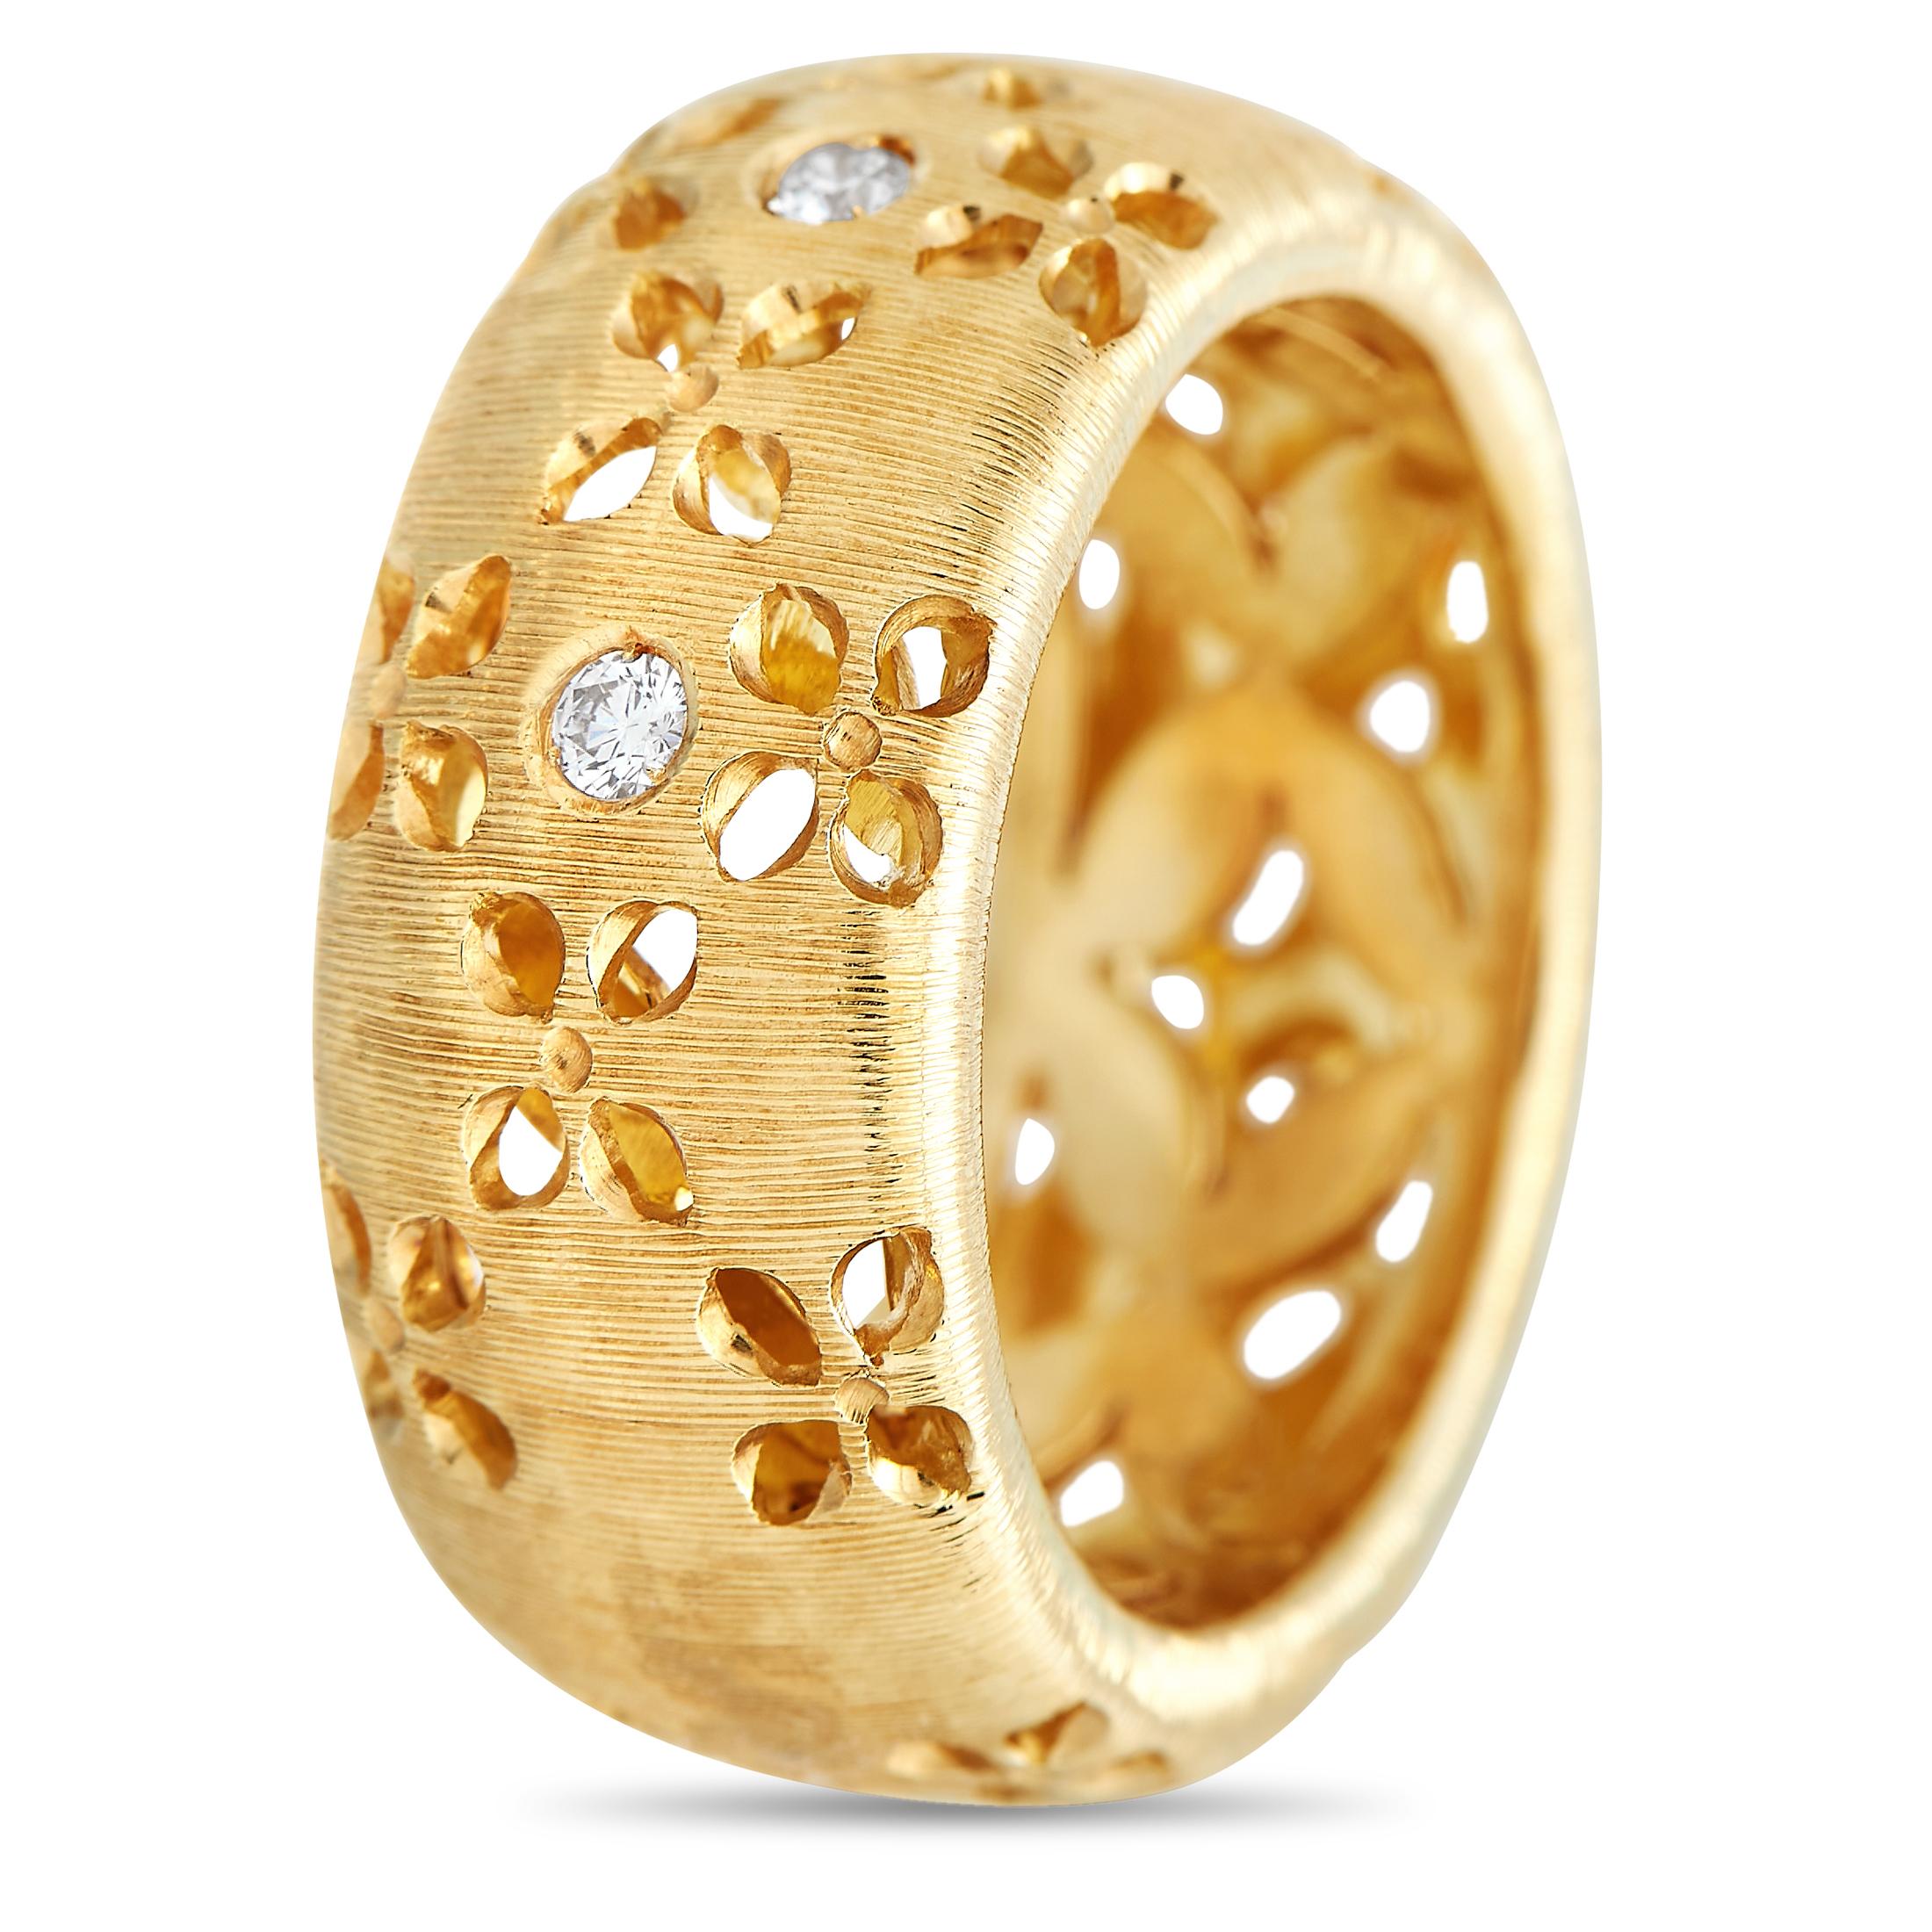 Issue de la collection Granada à la retraite, cette création de Roberto Coin témoigne de la maîtrise de l'art de la différence par le célèbre joaillier italien. La bague présente un anneau de 10 mm d'épaisseur avec une finition fortement brossée.